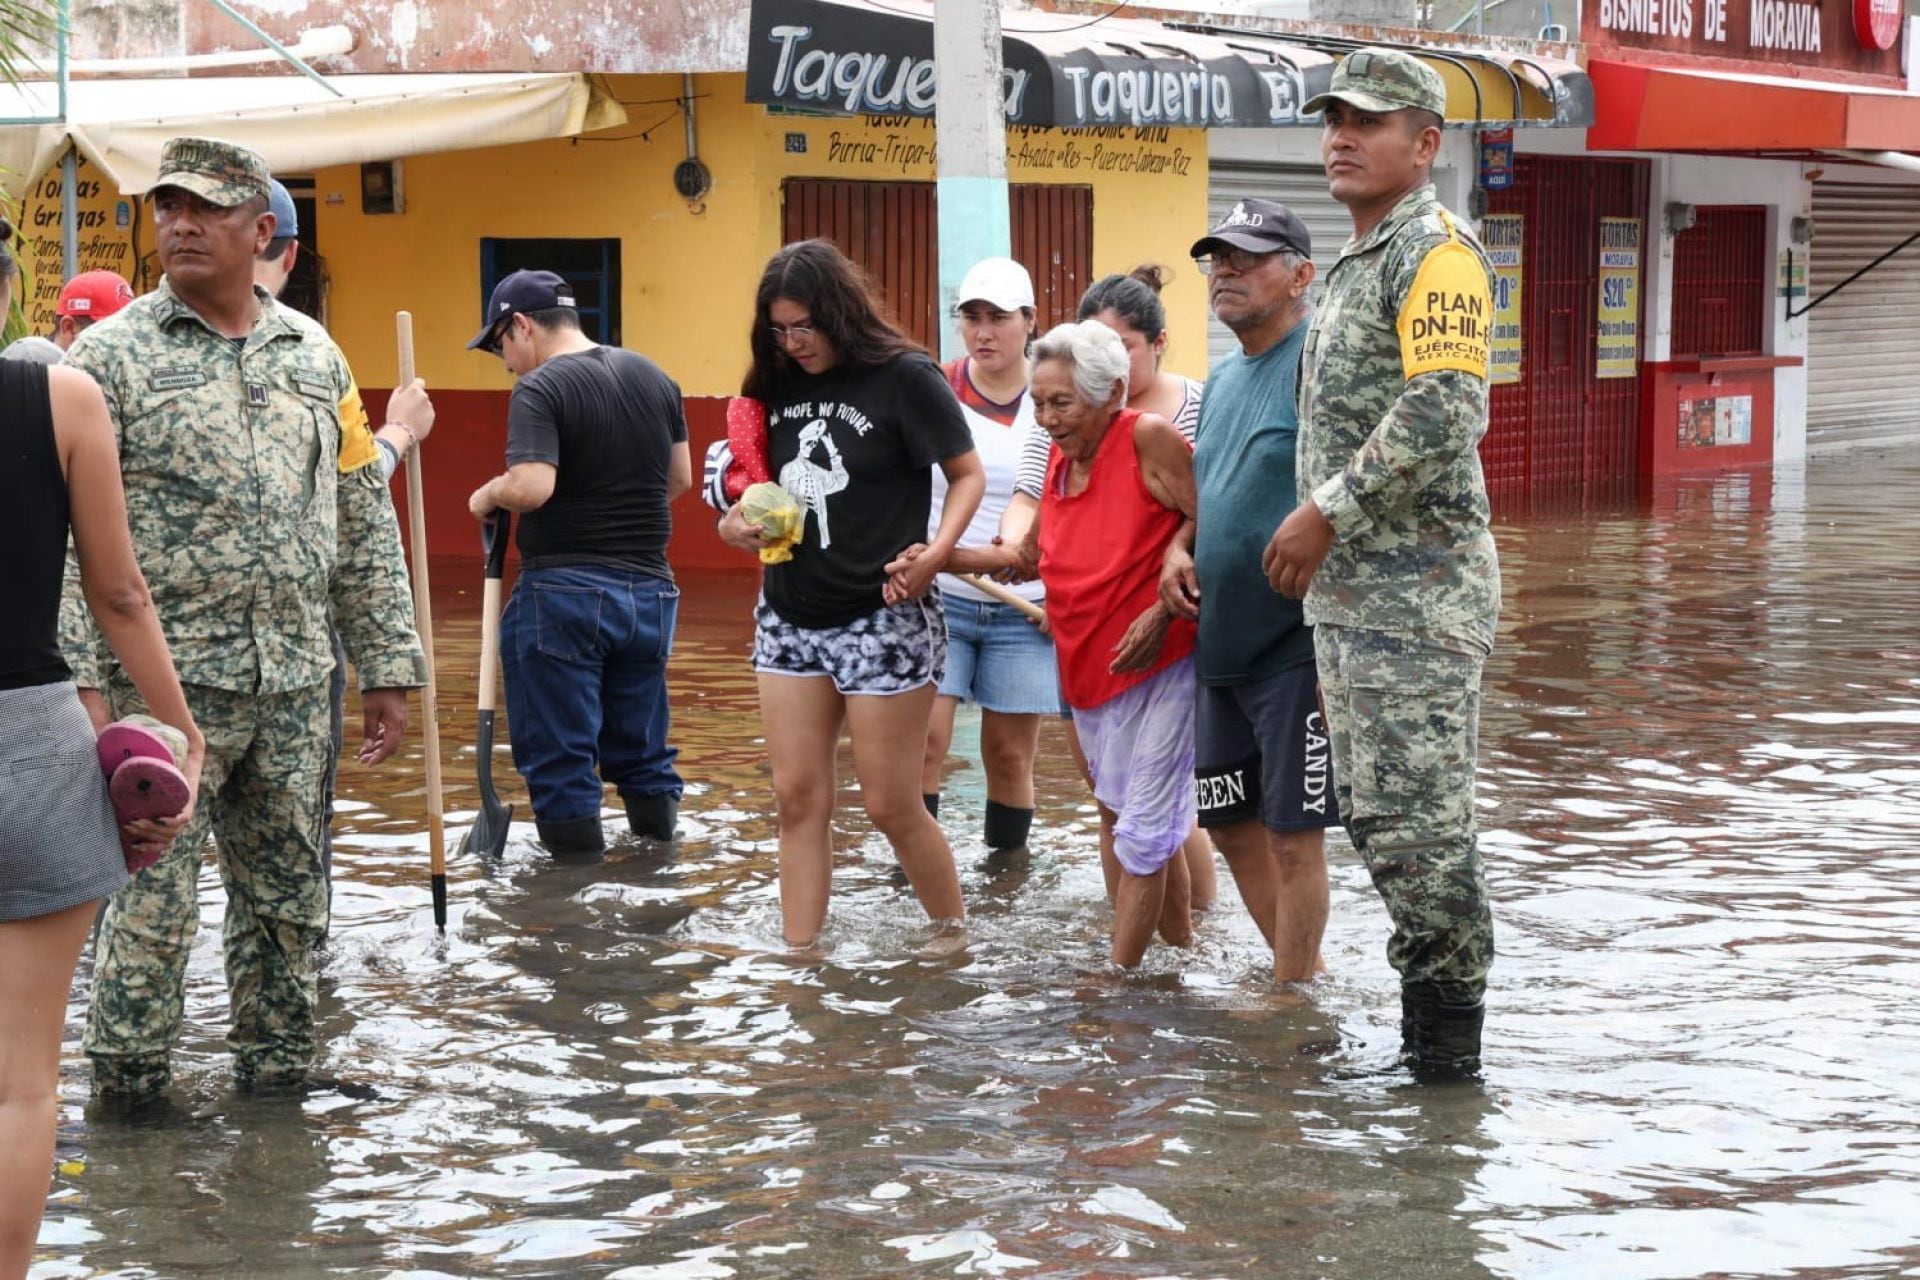 El ejército mexicano activó el plan DN-lll debido a las inundaciones provocadas por las intensas lluvias en Quintana Roo.
FOTO: ESPECIAL/CUARTOSCURO.COM